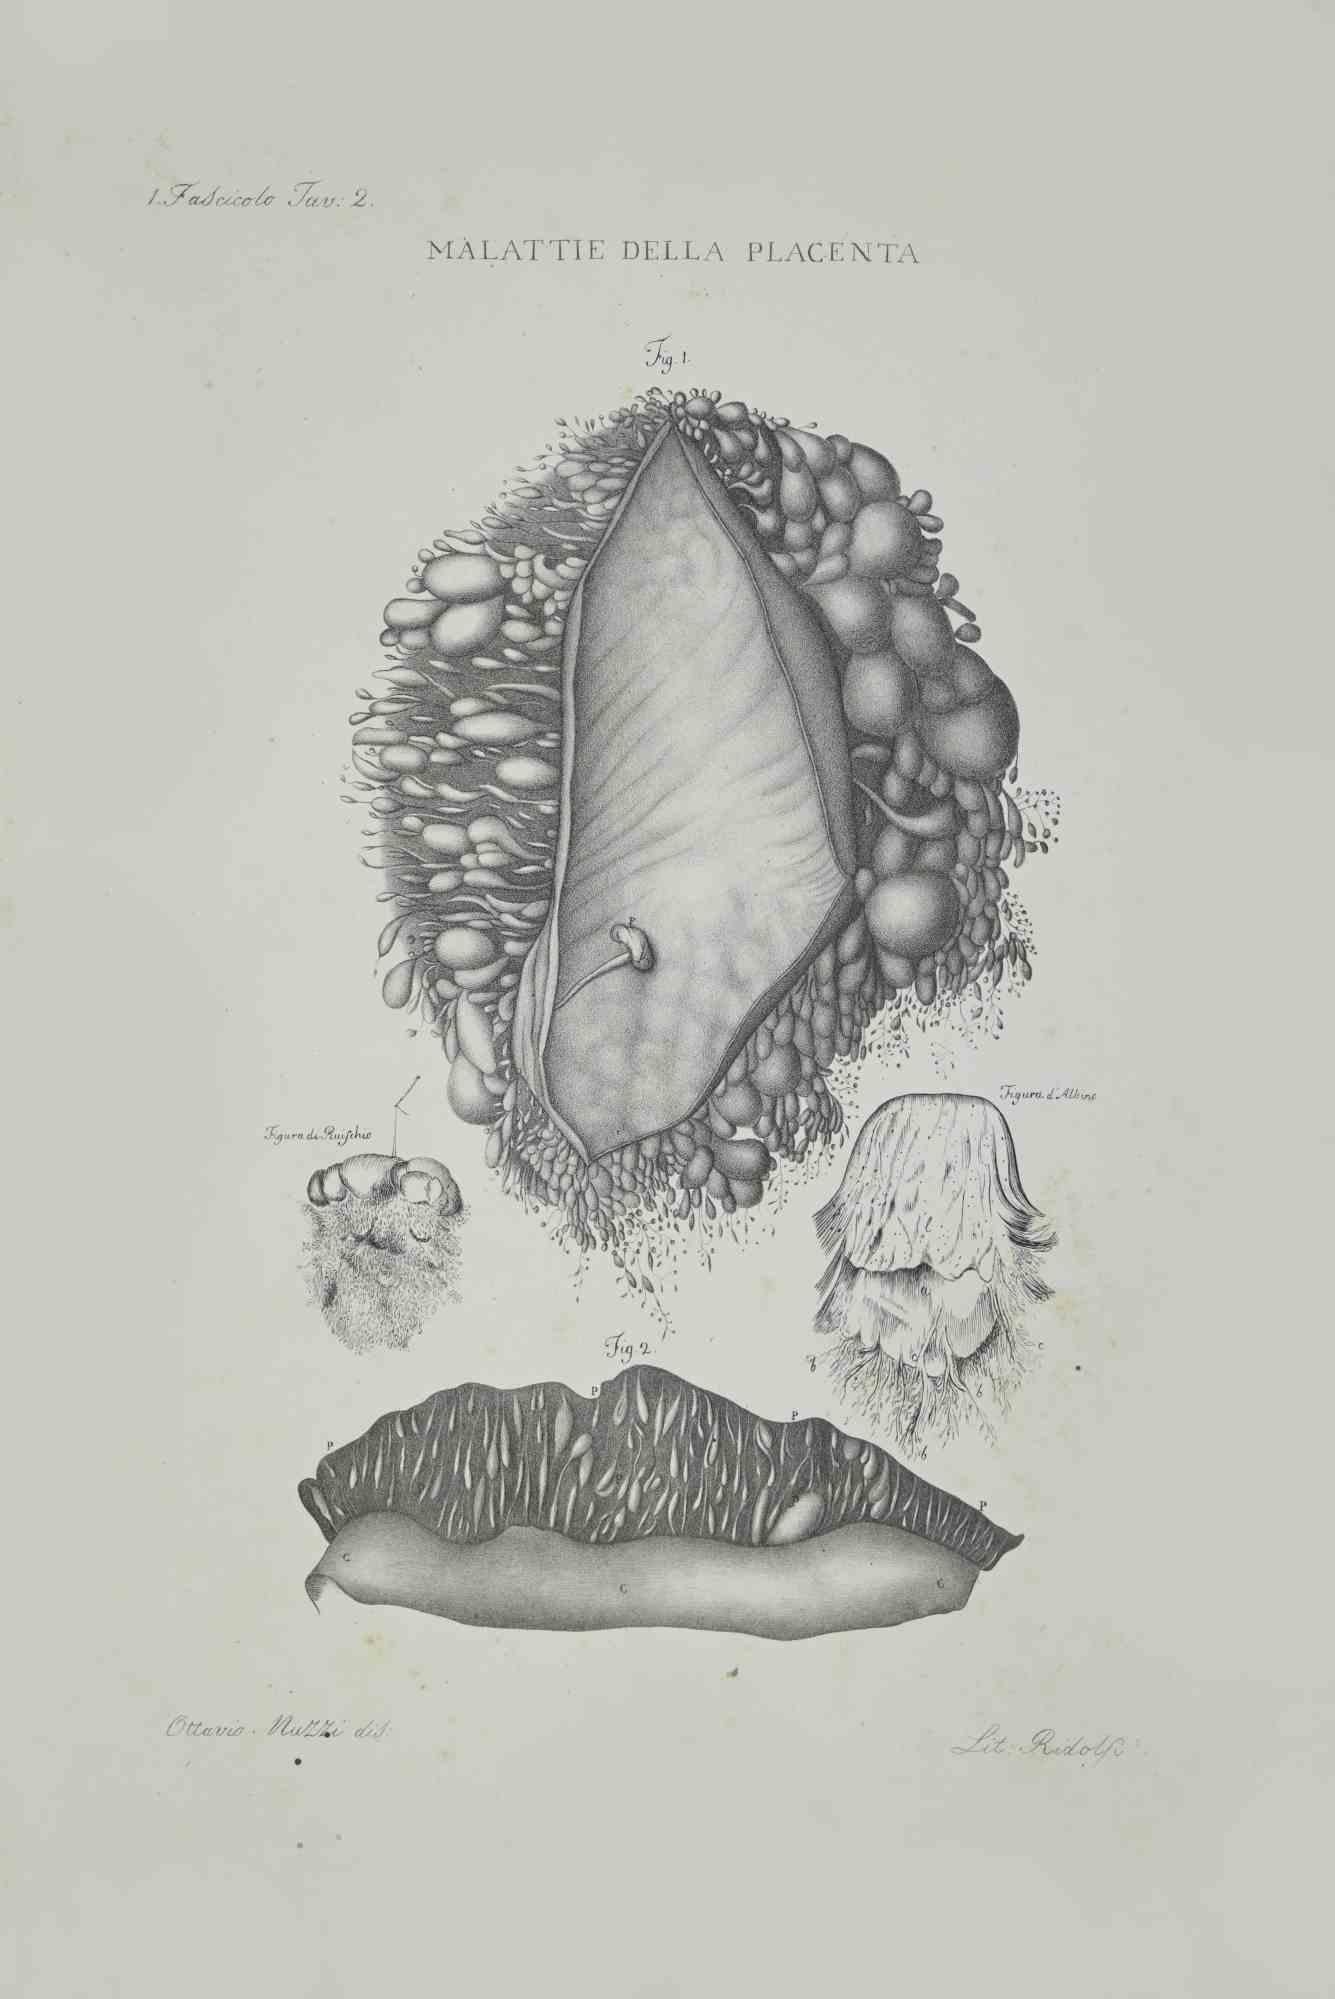 Les maladies de la placenta - Lithographie d'Ottavio Muzzi - 1843